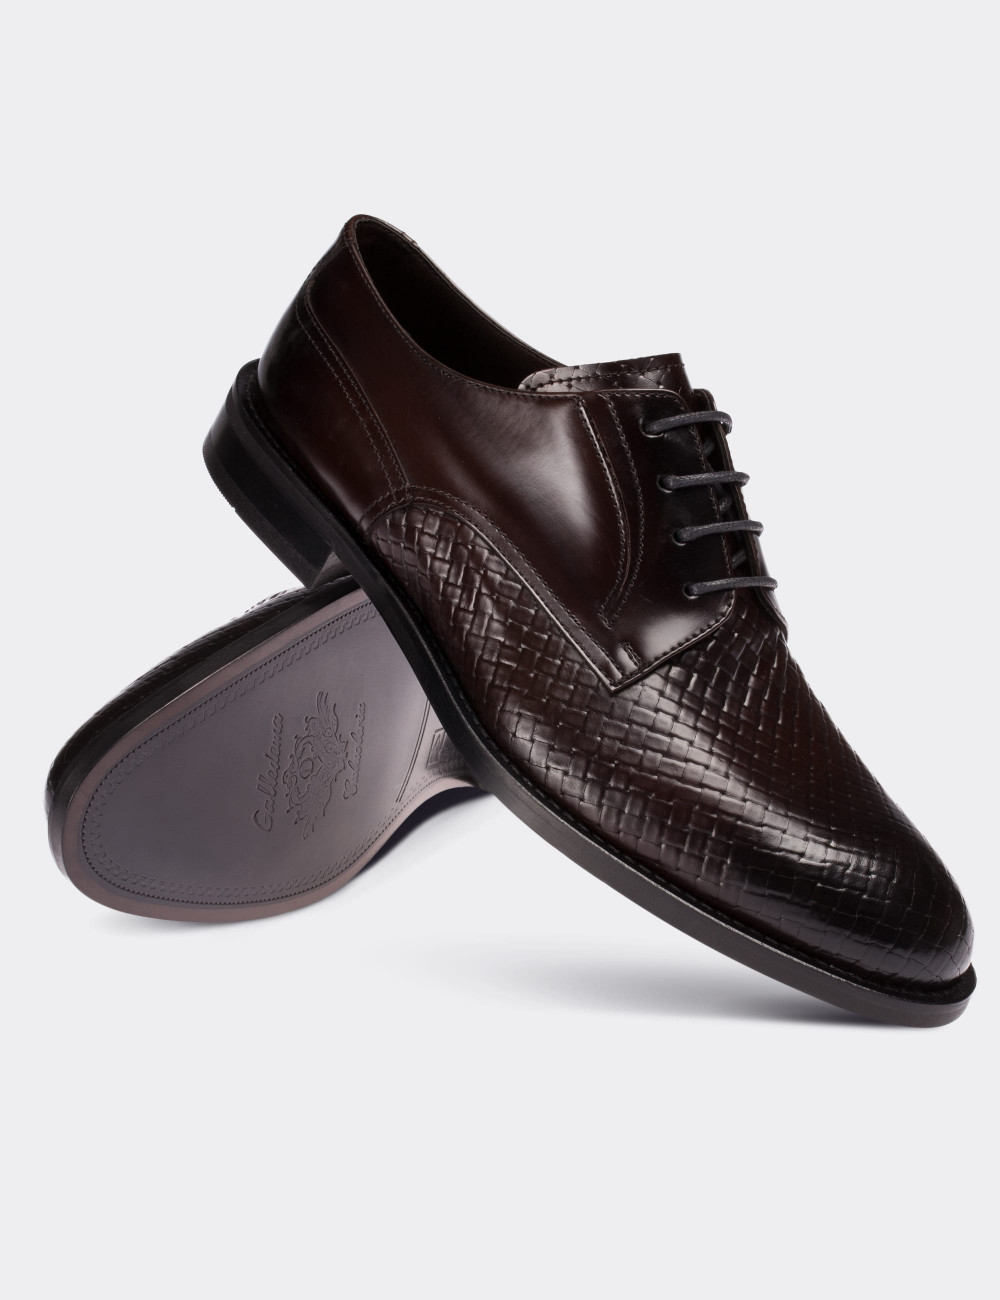 Hakiki Deri Bordo Klasik Erkek Ayakkabı - 01294MBRDM01